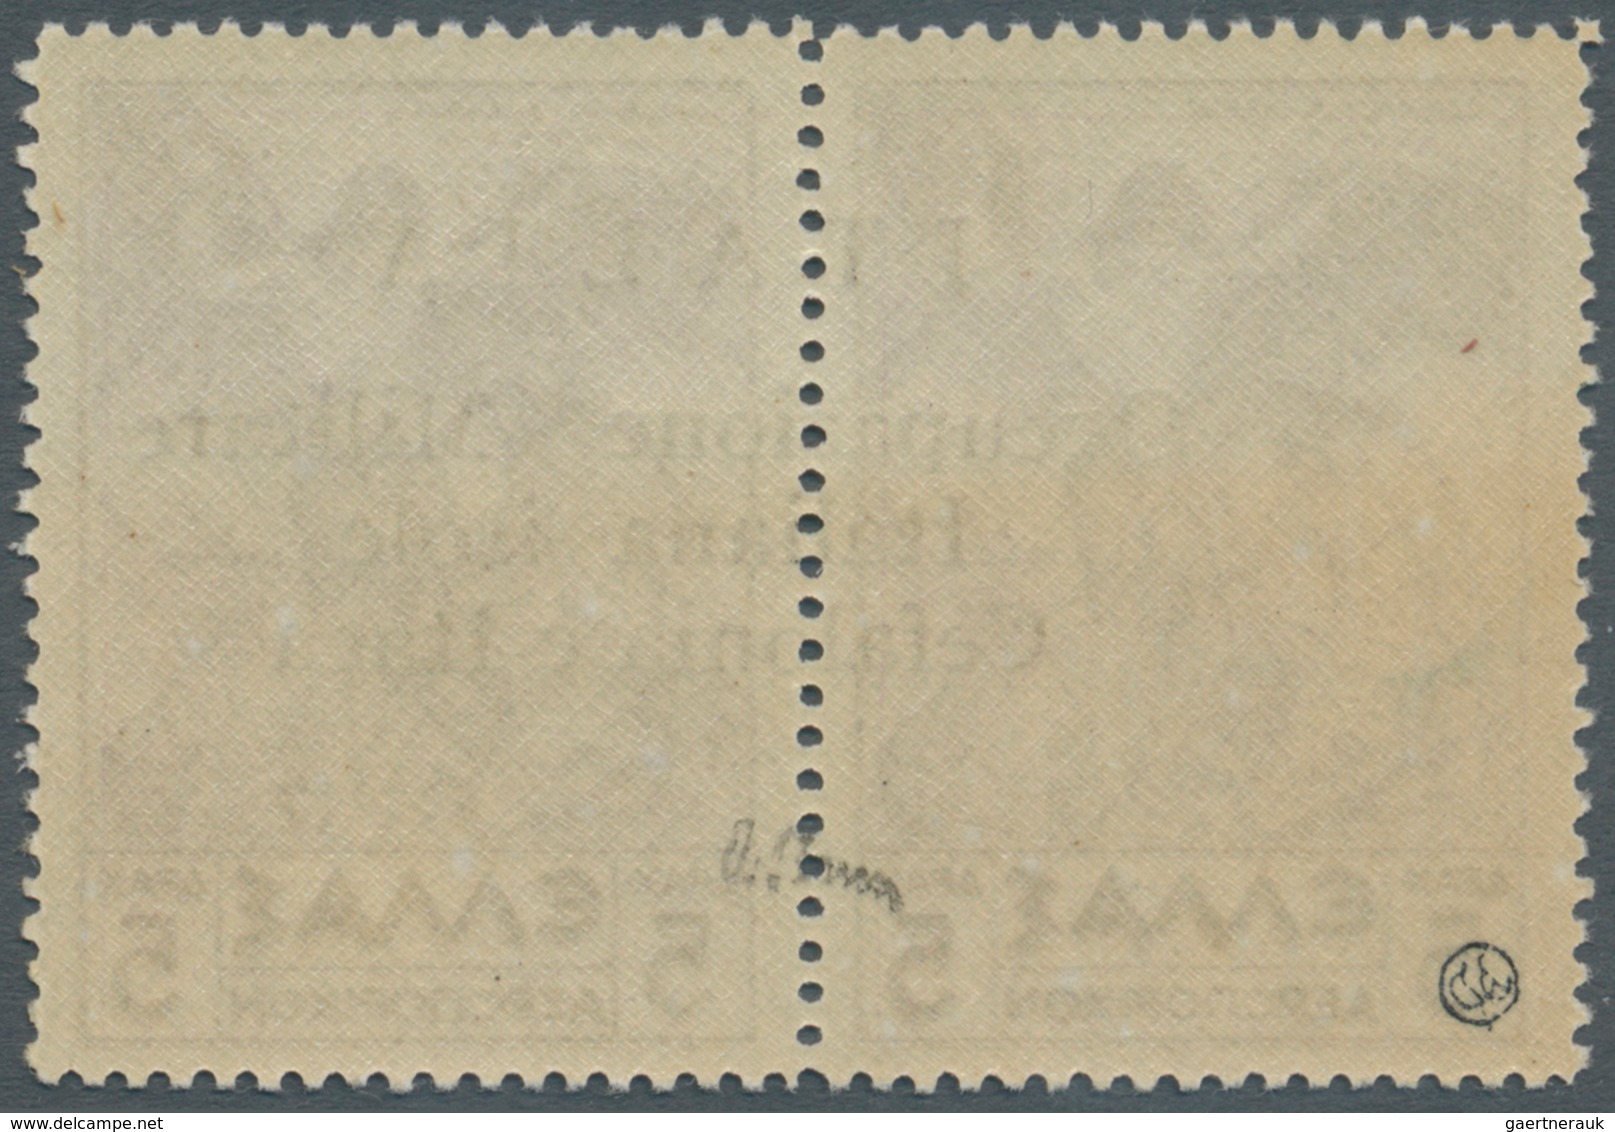 Ionische Inseln - Lokalausgaben: Kefalonia Und Ithaka: 1941, Argostoli Issue, Airmail Stamp 5dr. Vio - Ionische Inseln